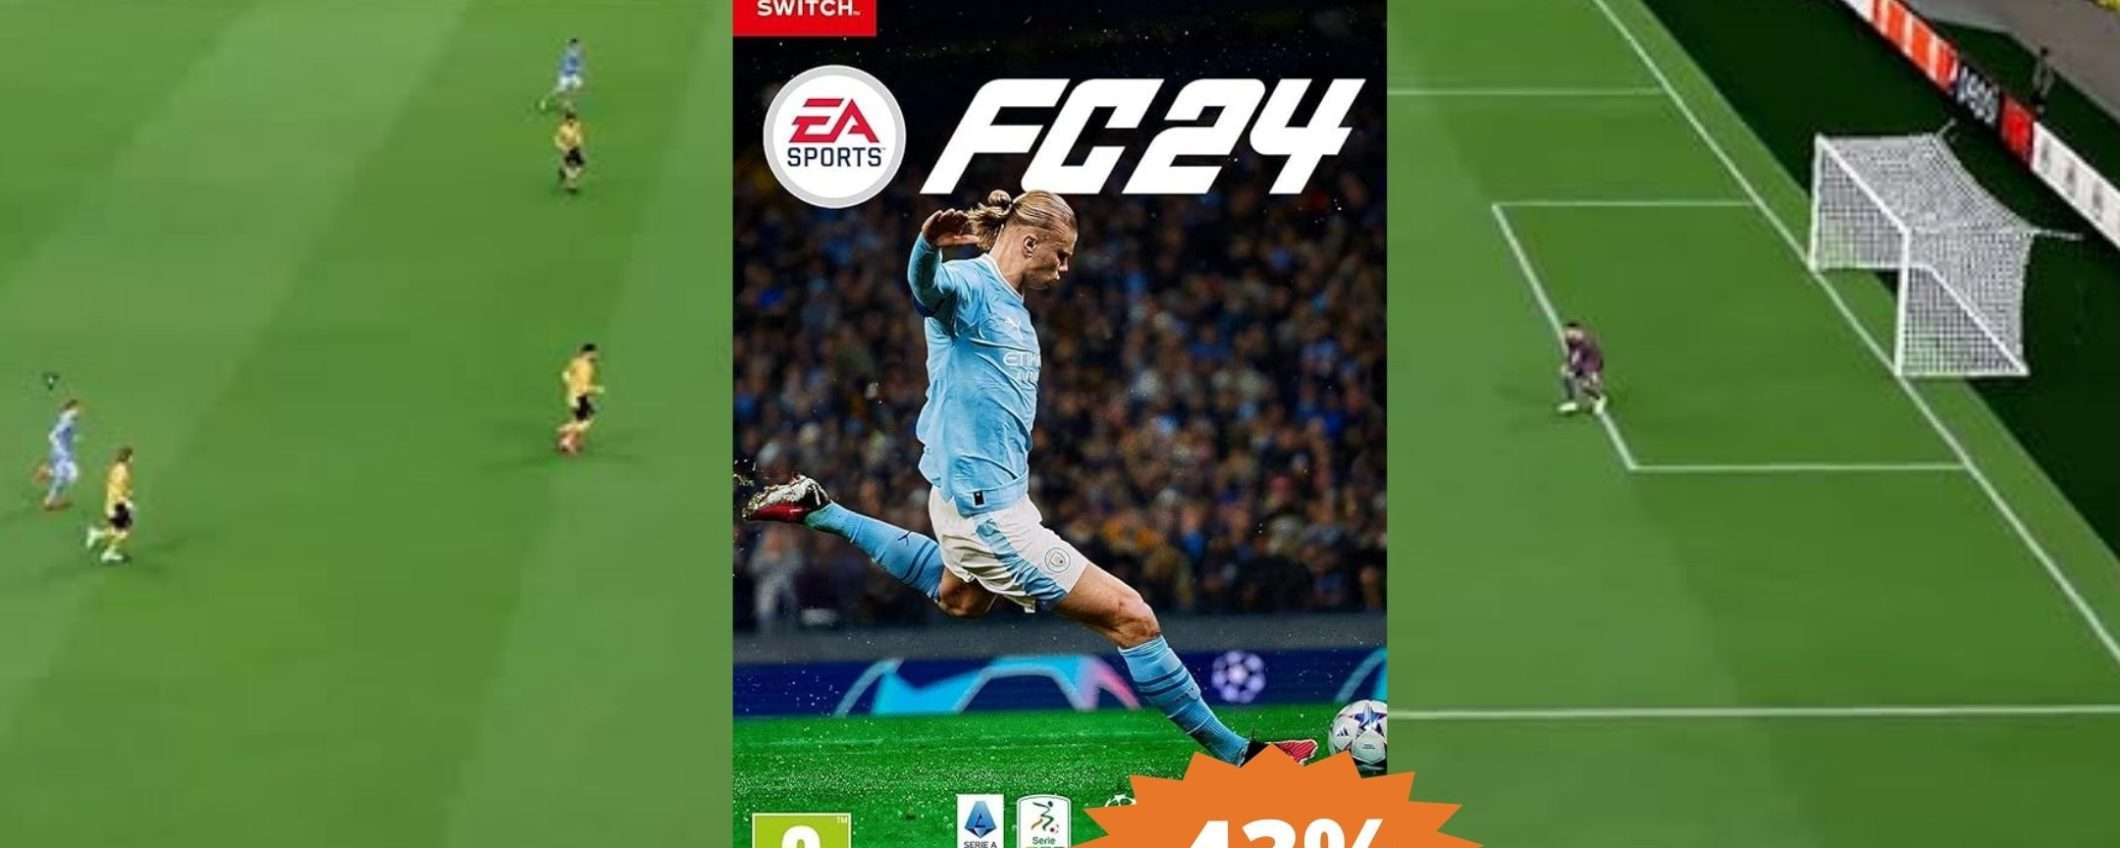 EA SPORTS FC 24: sconto INCREDIBILE del 43% su Amazon